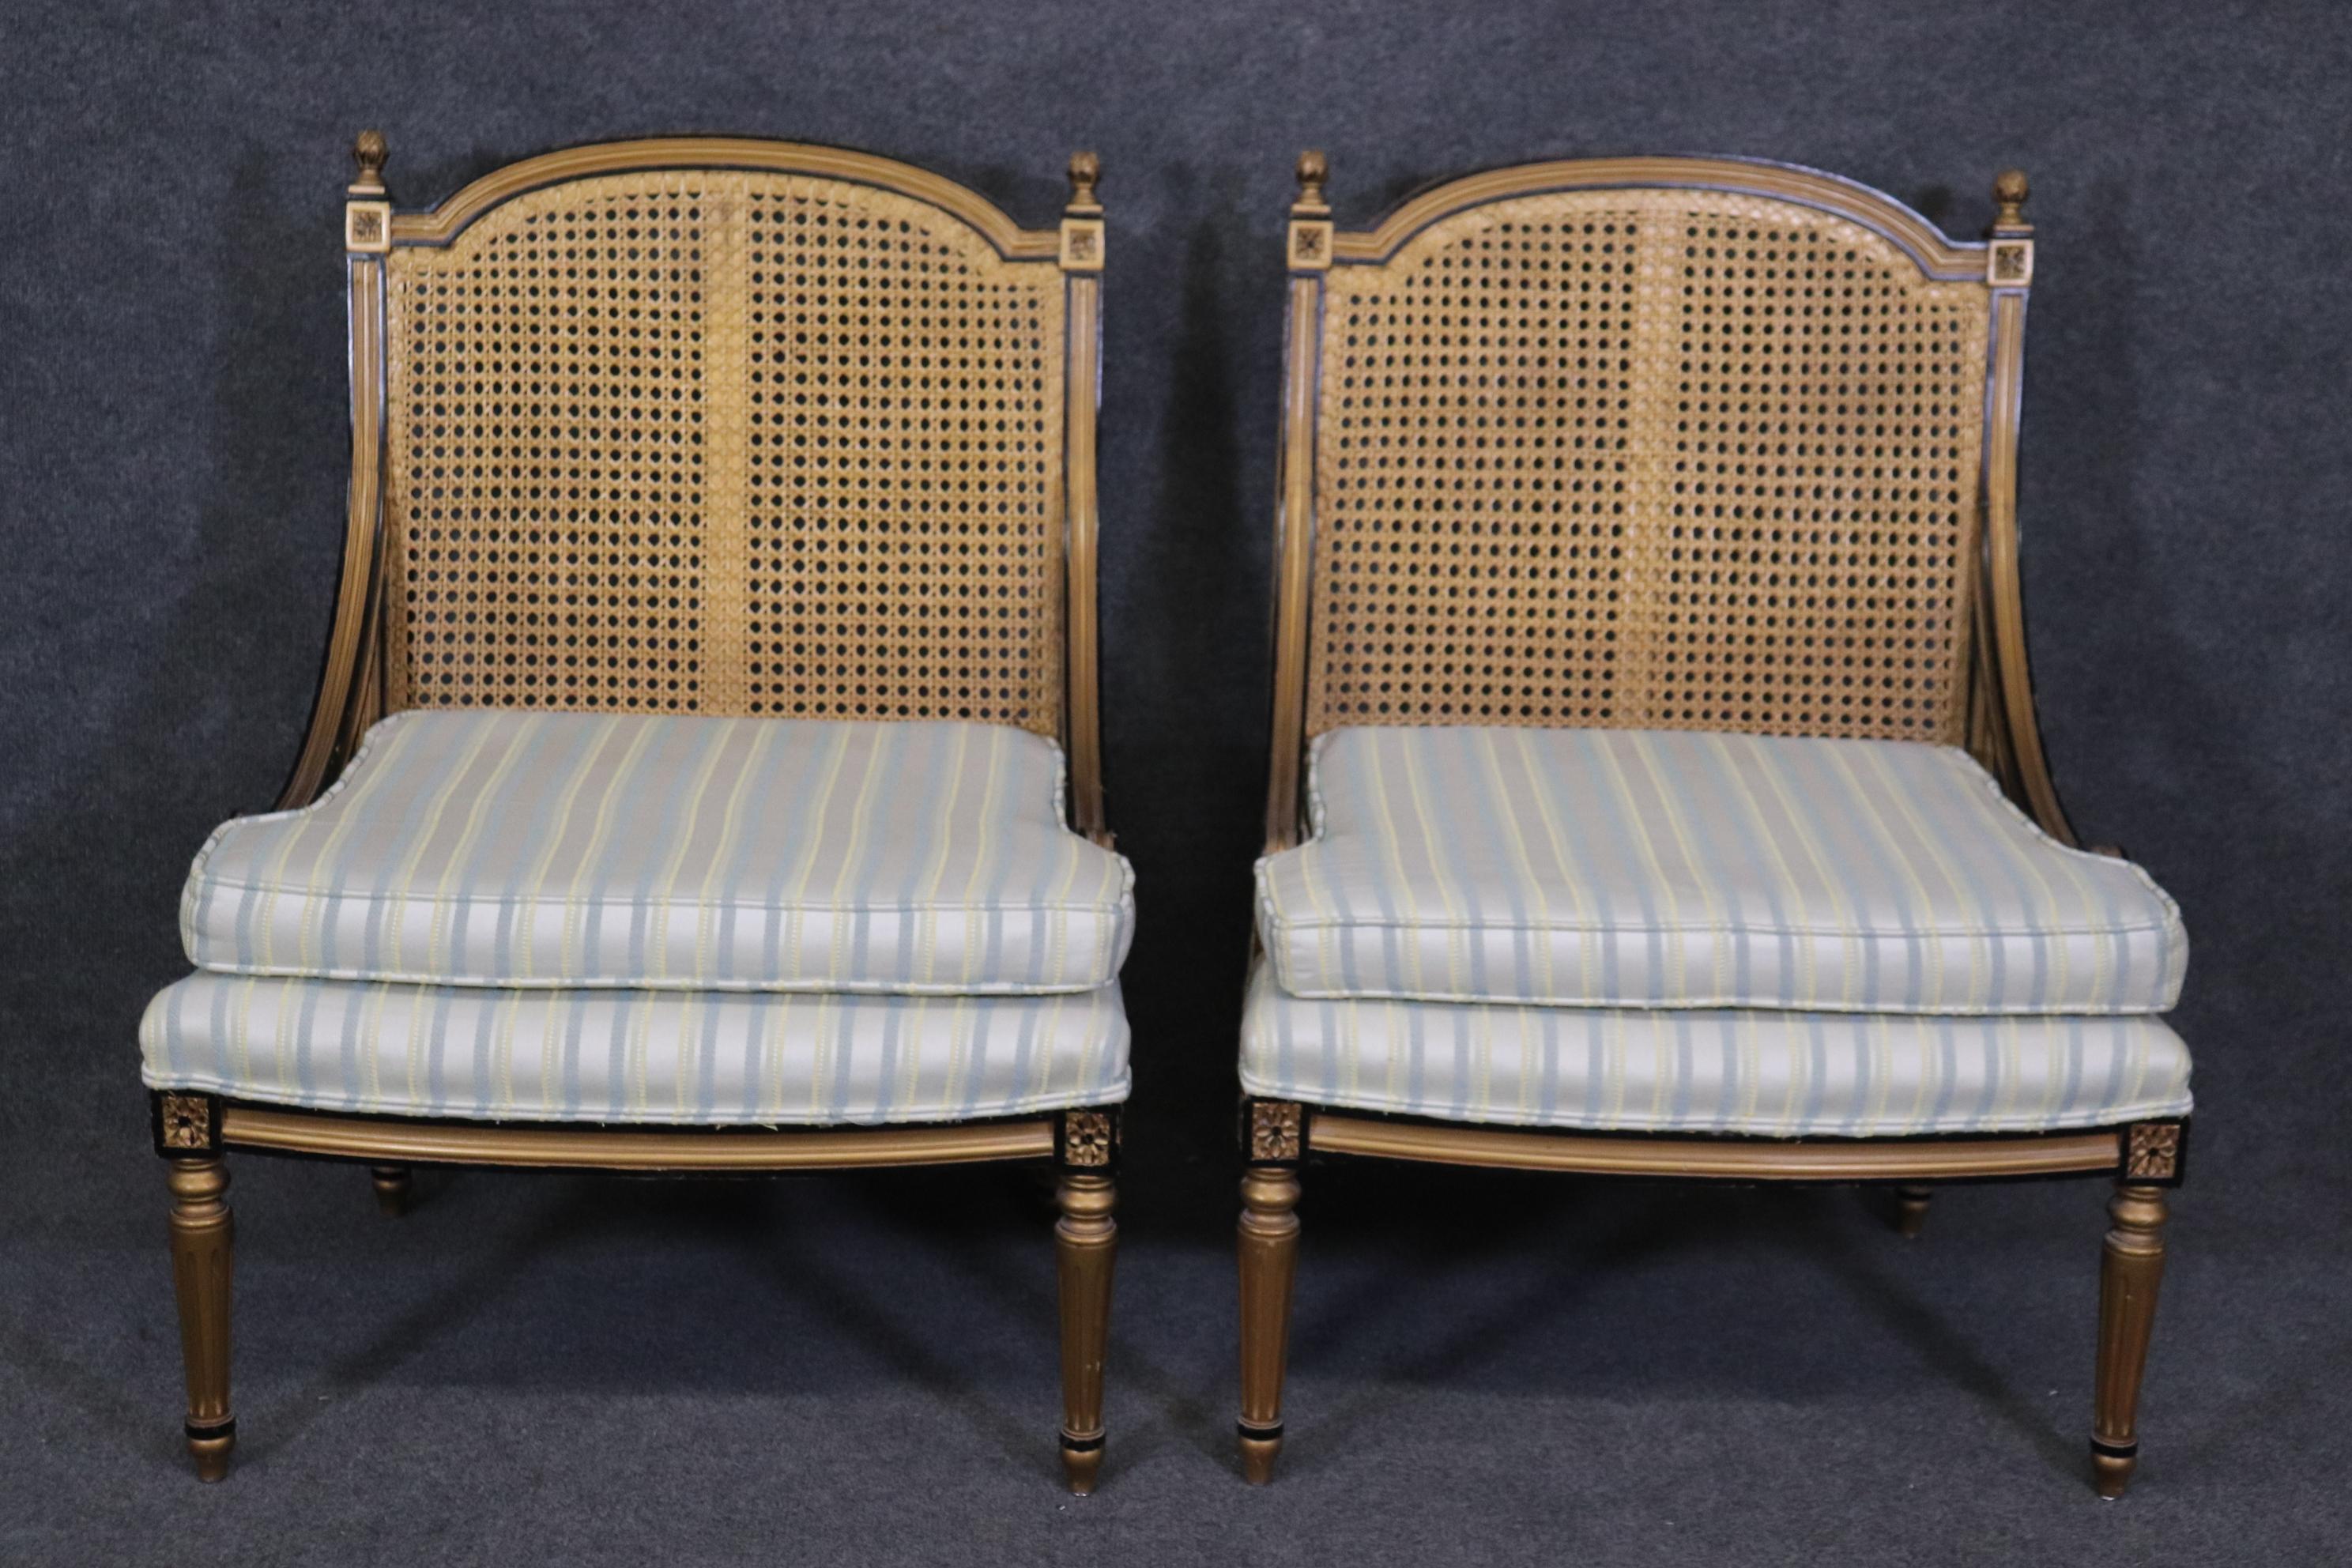 Abmessungen- H: 34 1/4in B: 25 3/4in T: 24in SH: 17 1/4in 
Dieses Paar Französisch Louis XVI Stil Cane Back Bergeres, Lounge Stühle sind perfekt für Sie und Ihr Zuhause und sind ein schönes Beispiel für hochwertige Möbel aus dem späten 20. Wenn Sie